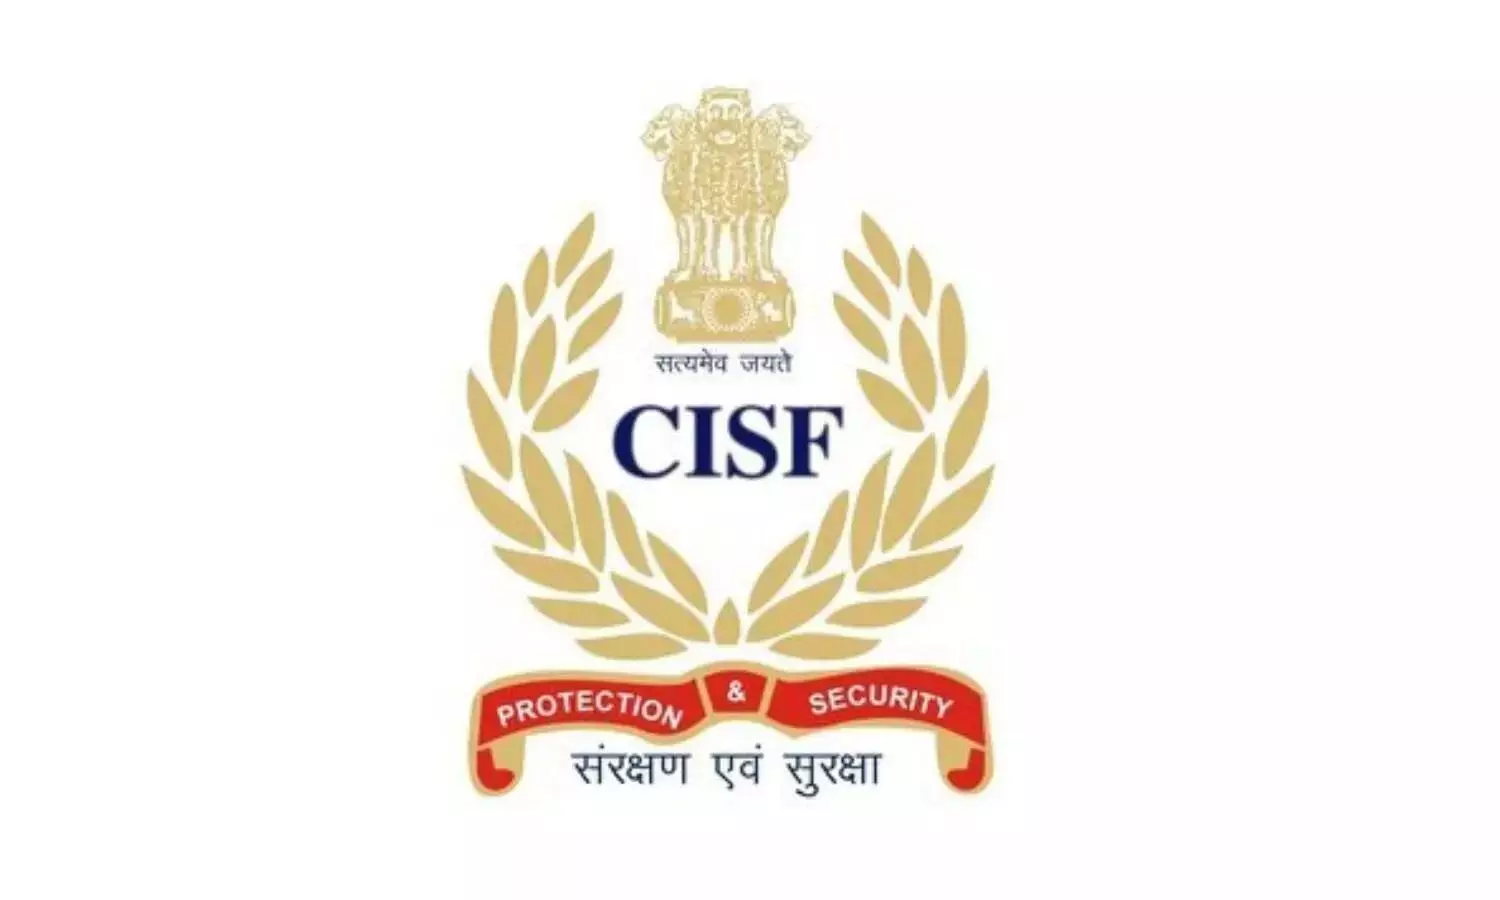 Andhra Pradesh: 2 जुलाई से विजयवाड़ा हवाई अड्डे पर सुरक्षा की जिम्मेदारी CISF संभालेगी